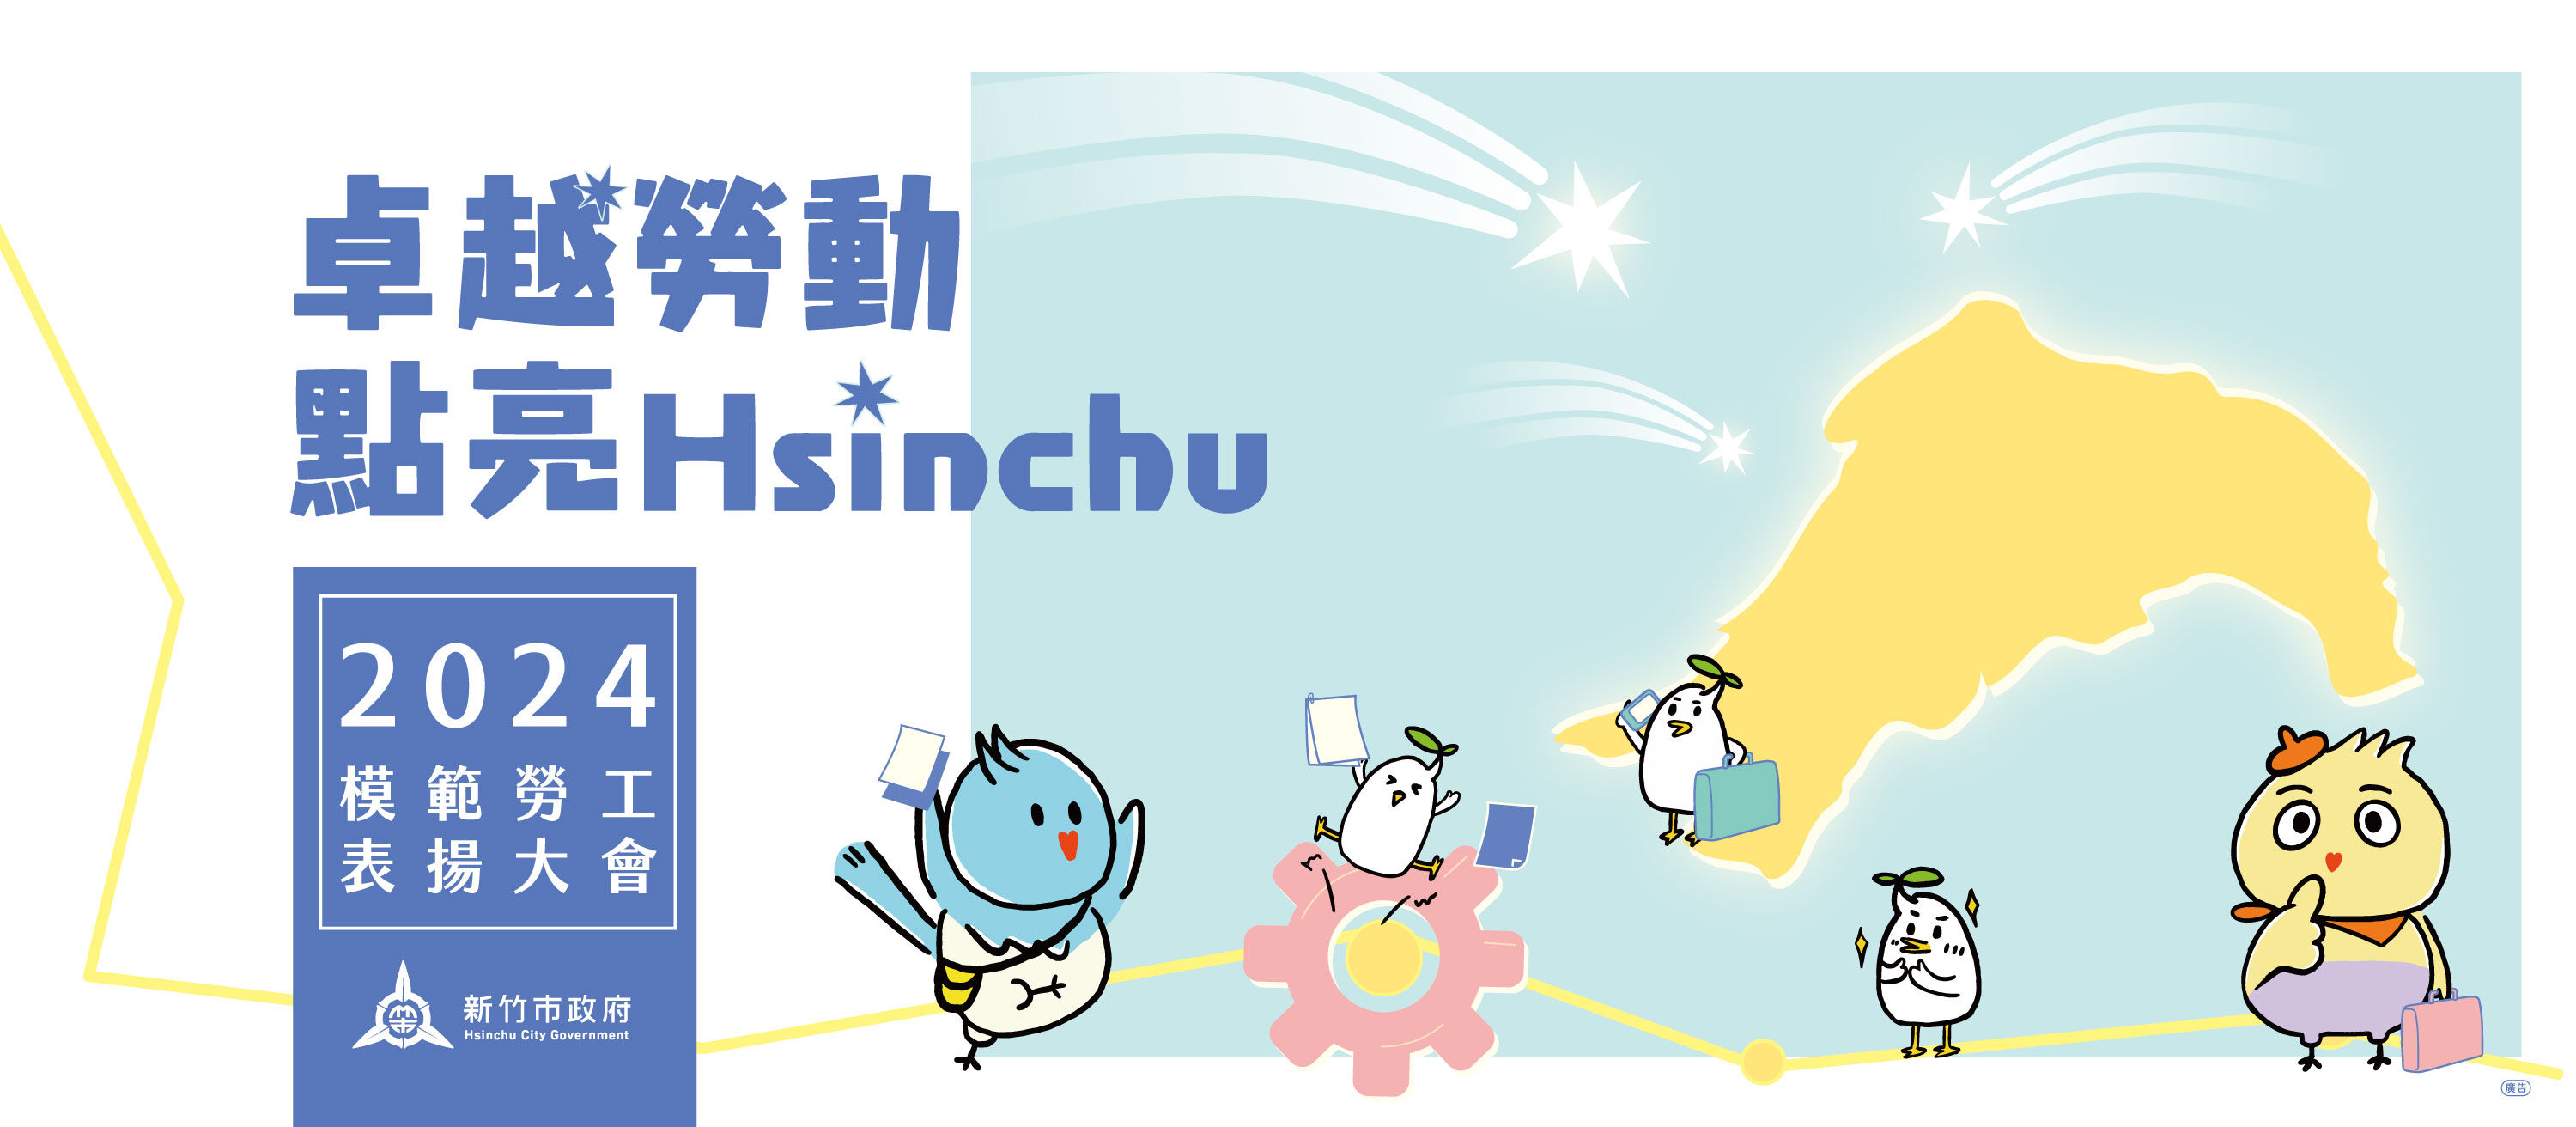 4月27日辦理「卓越勞動 點亮Hsinchu」模範勞工表揚大會